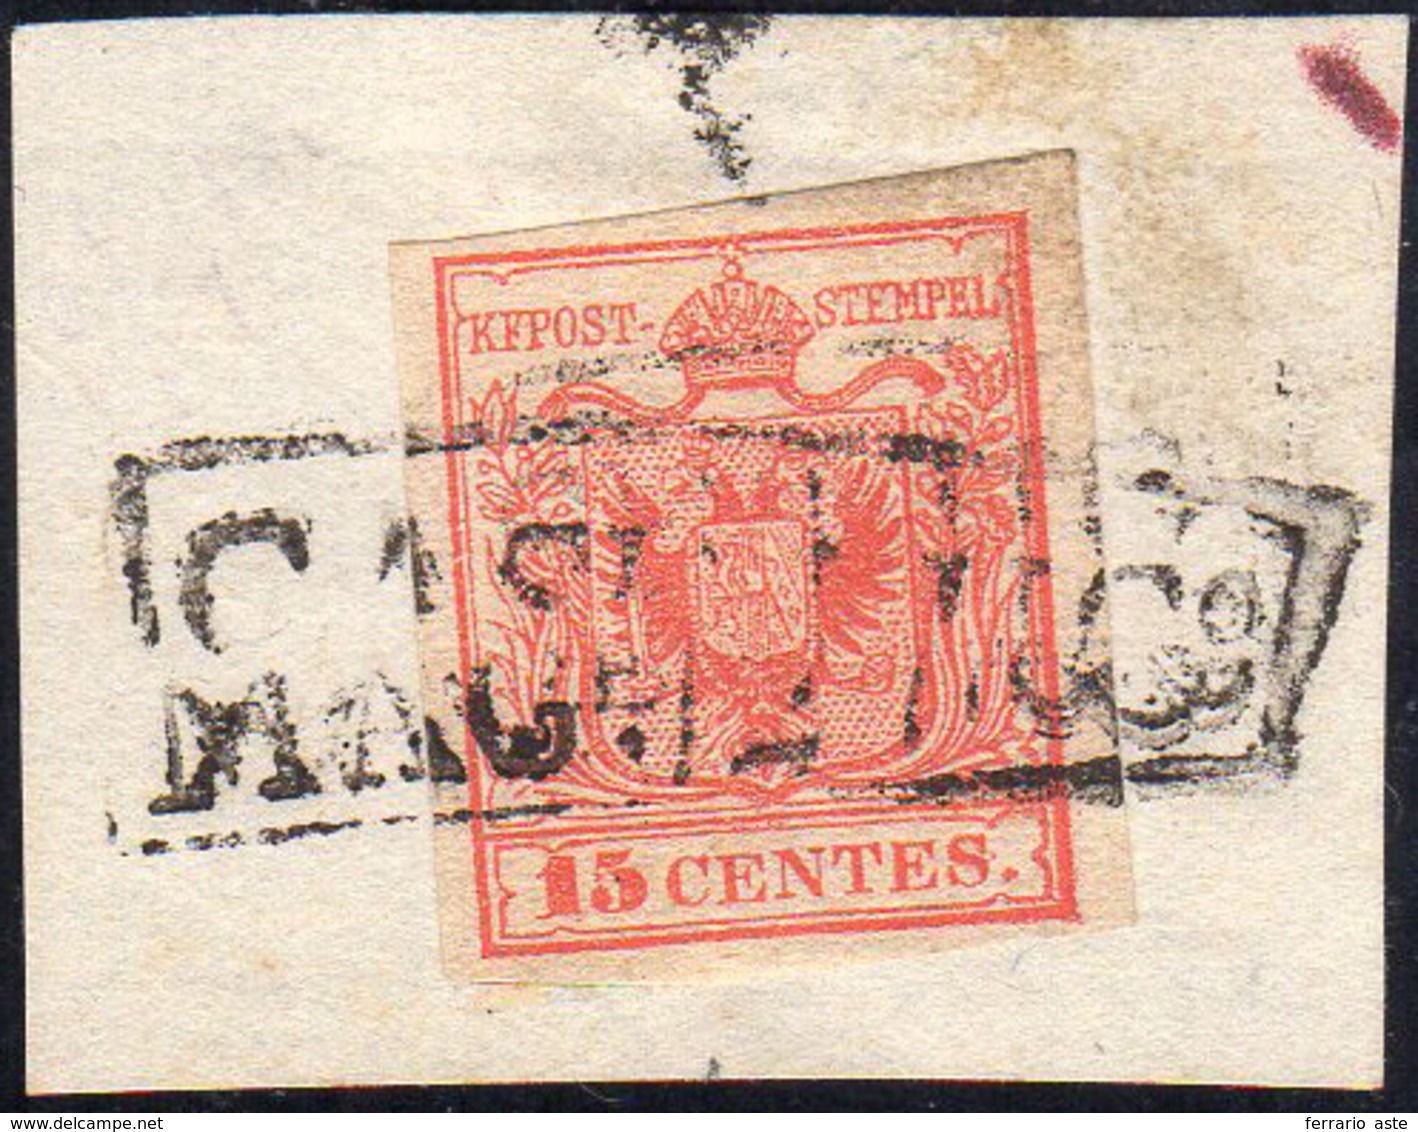 CASALMAGGIORE, Rd Punti R2 - 15 Cent. (3), Perfetto, Usato Su Piccolo Frammento Nel Luglio 1850. Ann... - Lombardo-Vénétie